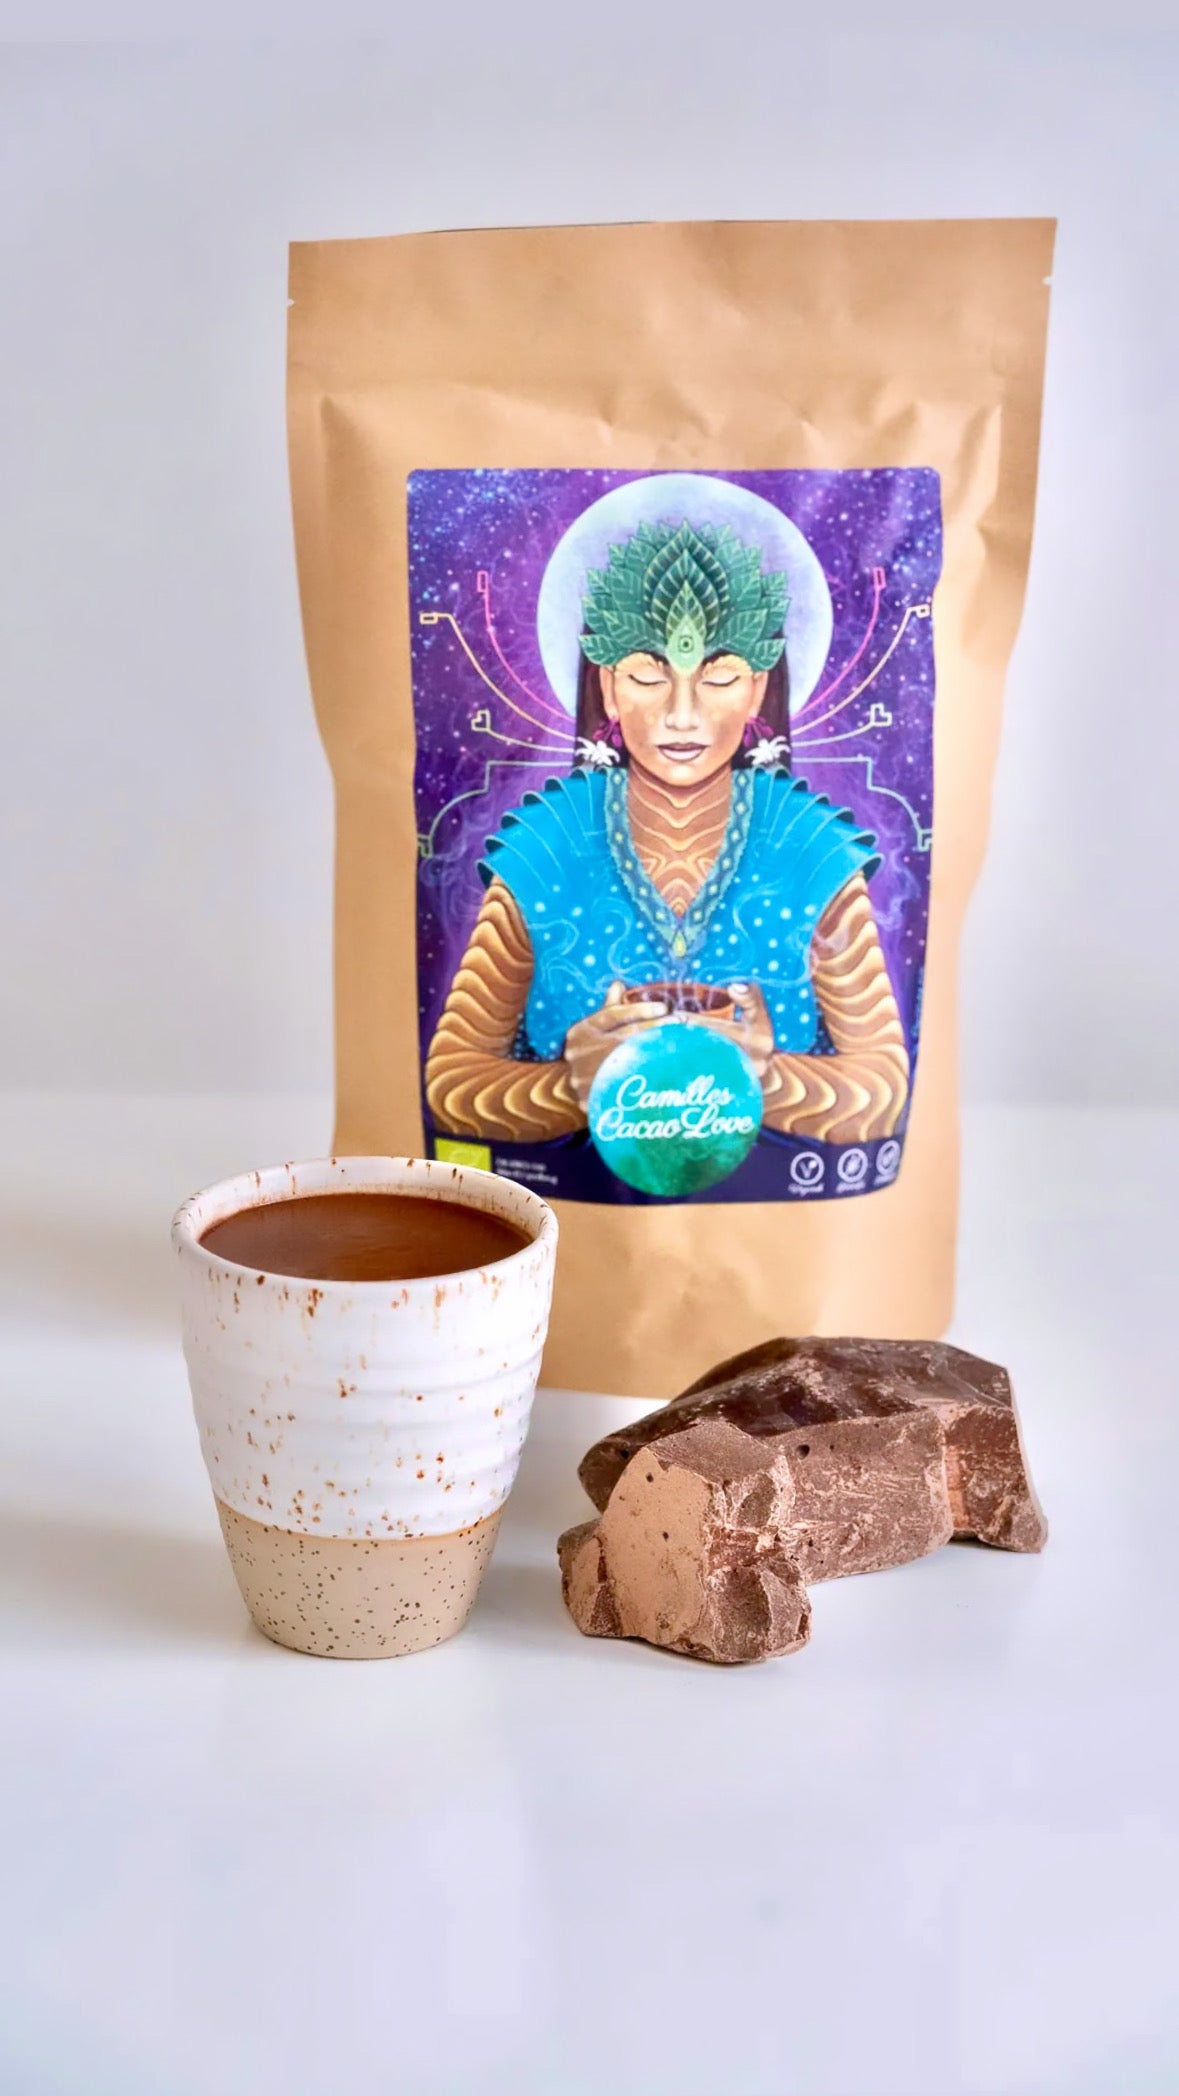 Camilles Cacao Love - 420g ☽ Camilles fantastiske “soul medicine” i form af ren økologisk ceremoniel cacao ☽